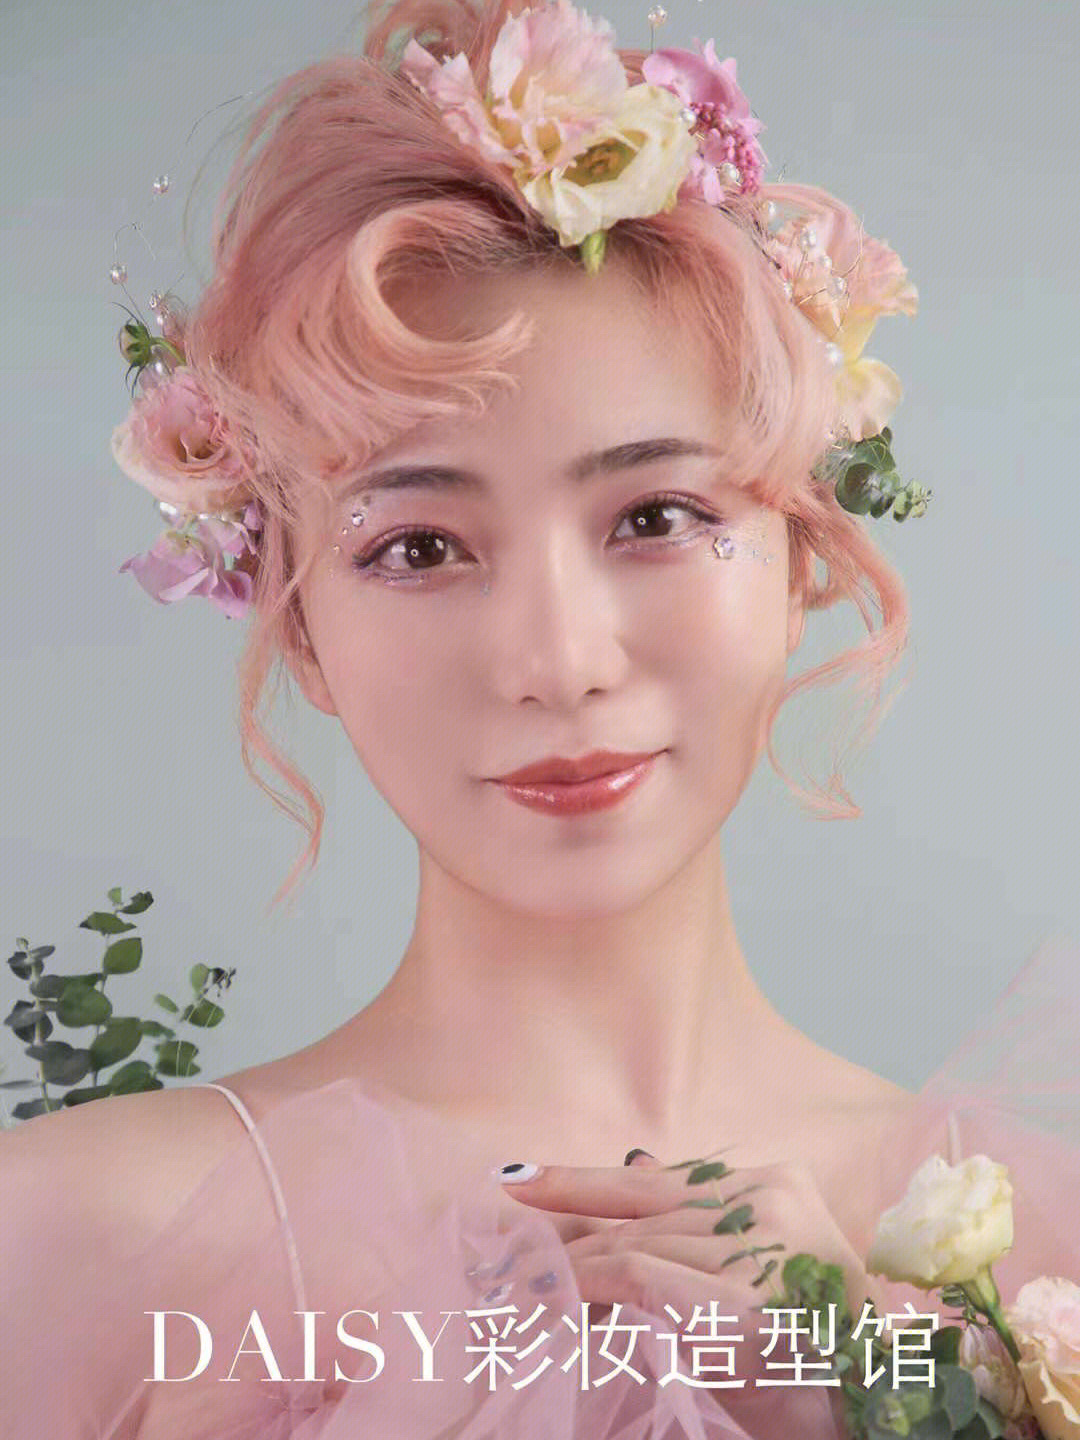 上海化妆培训   化妆培训  专业化妆培训   新娘化妆造型培训   新娘